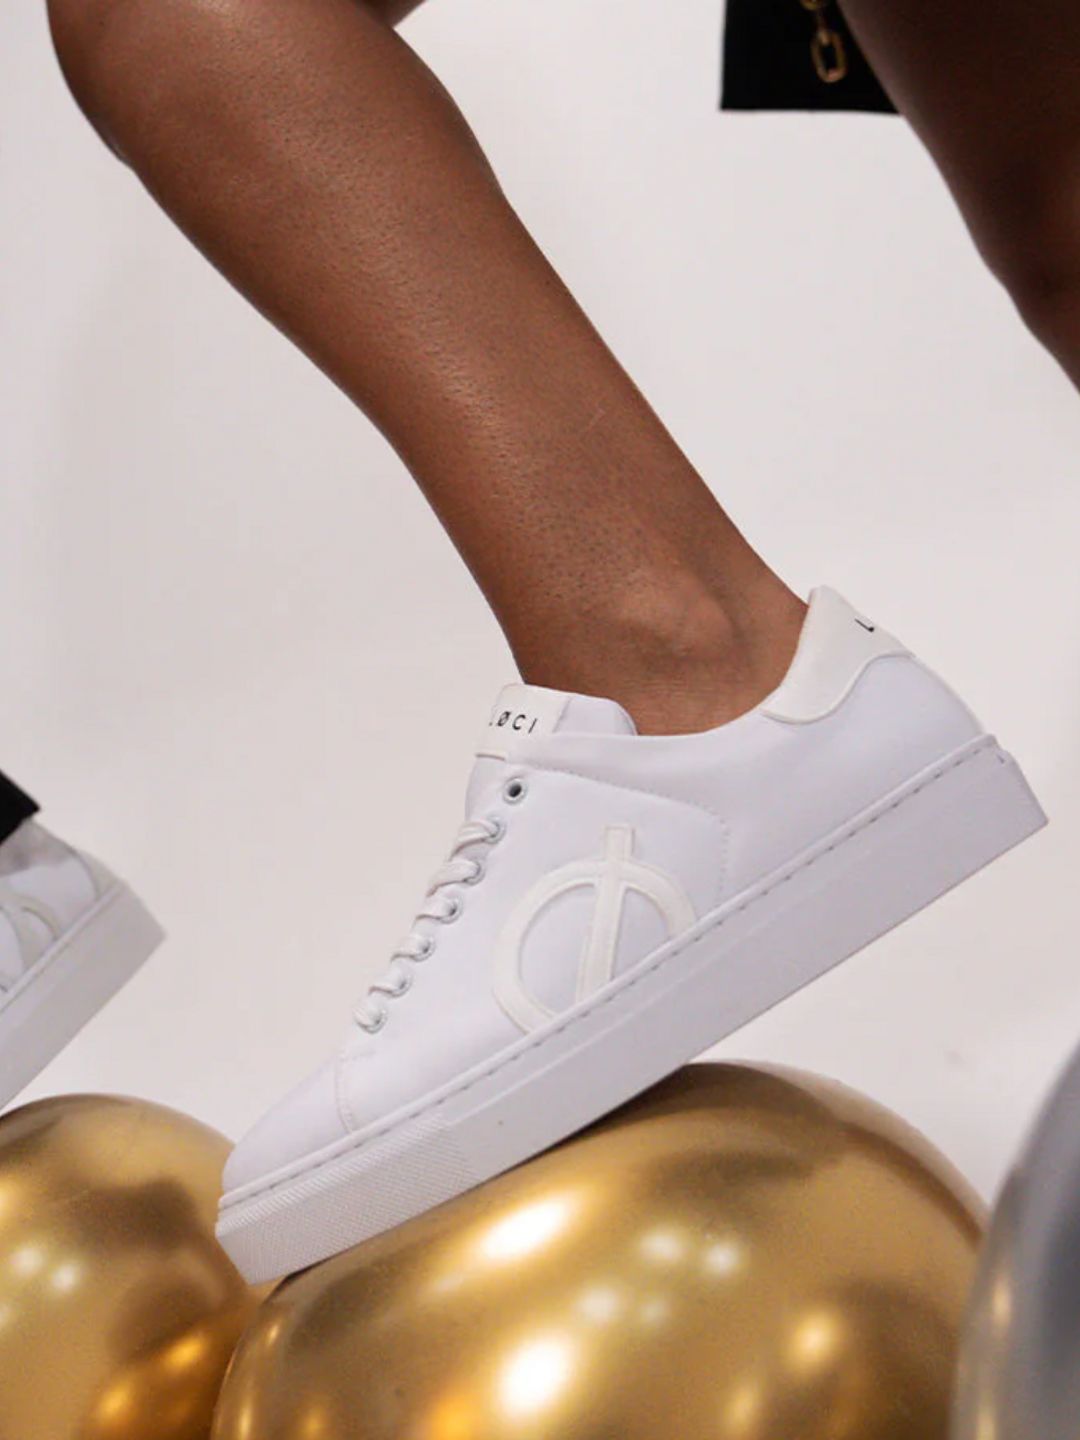 the 'Origin' style from footwear brand LØCI